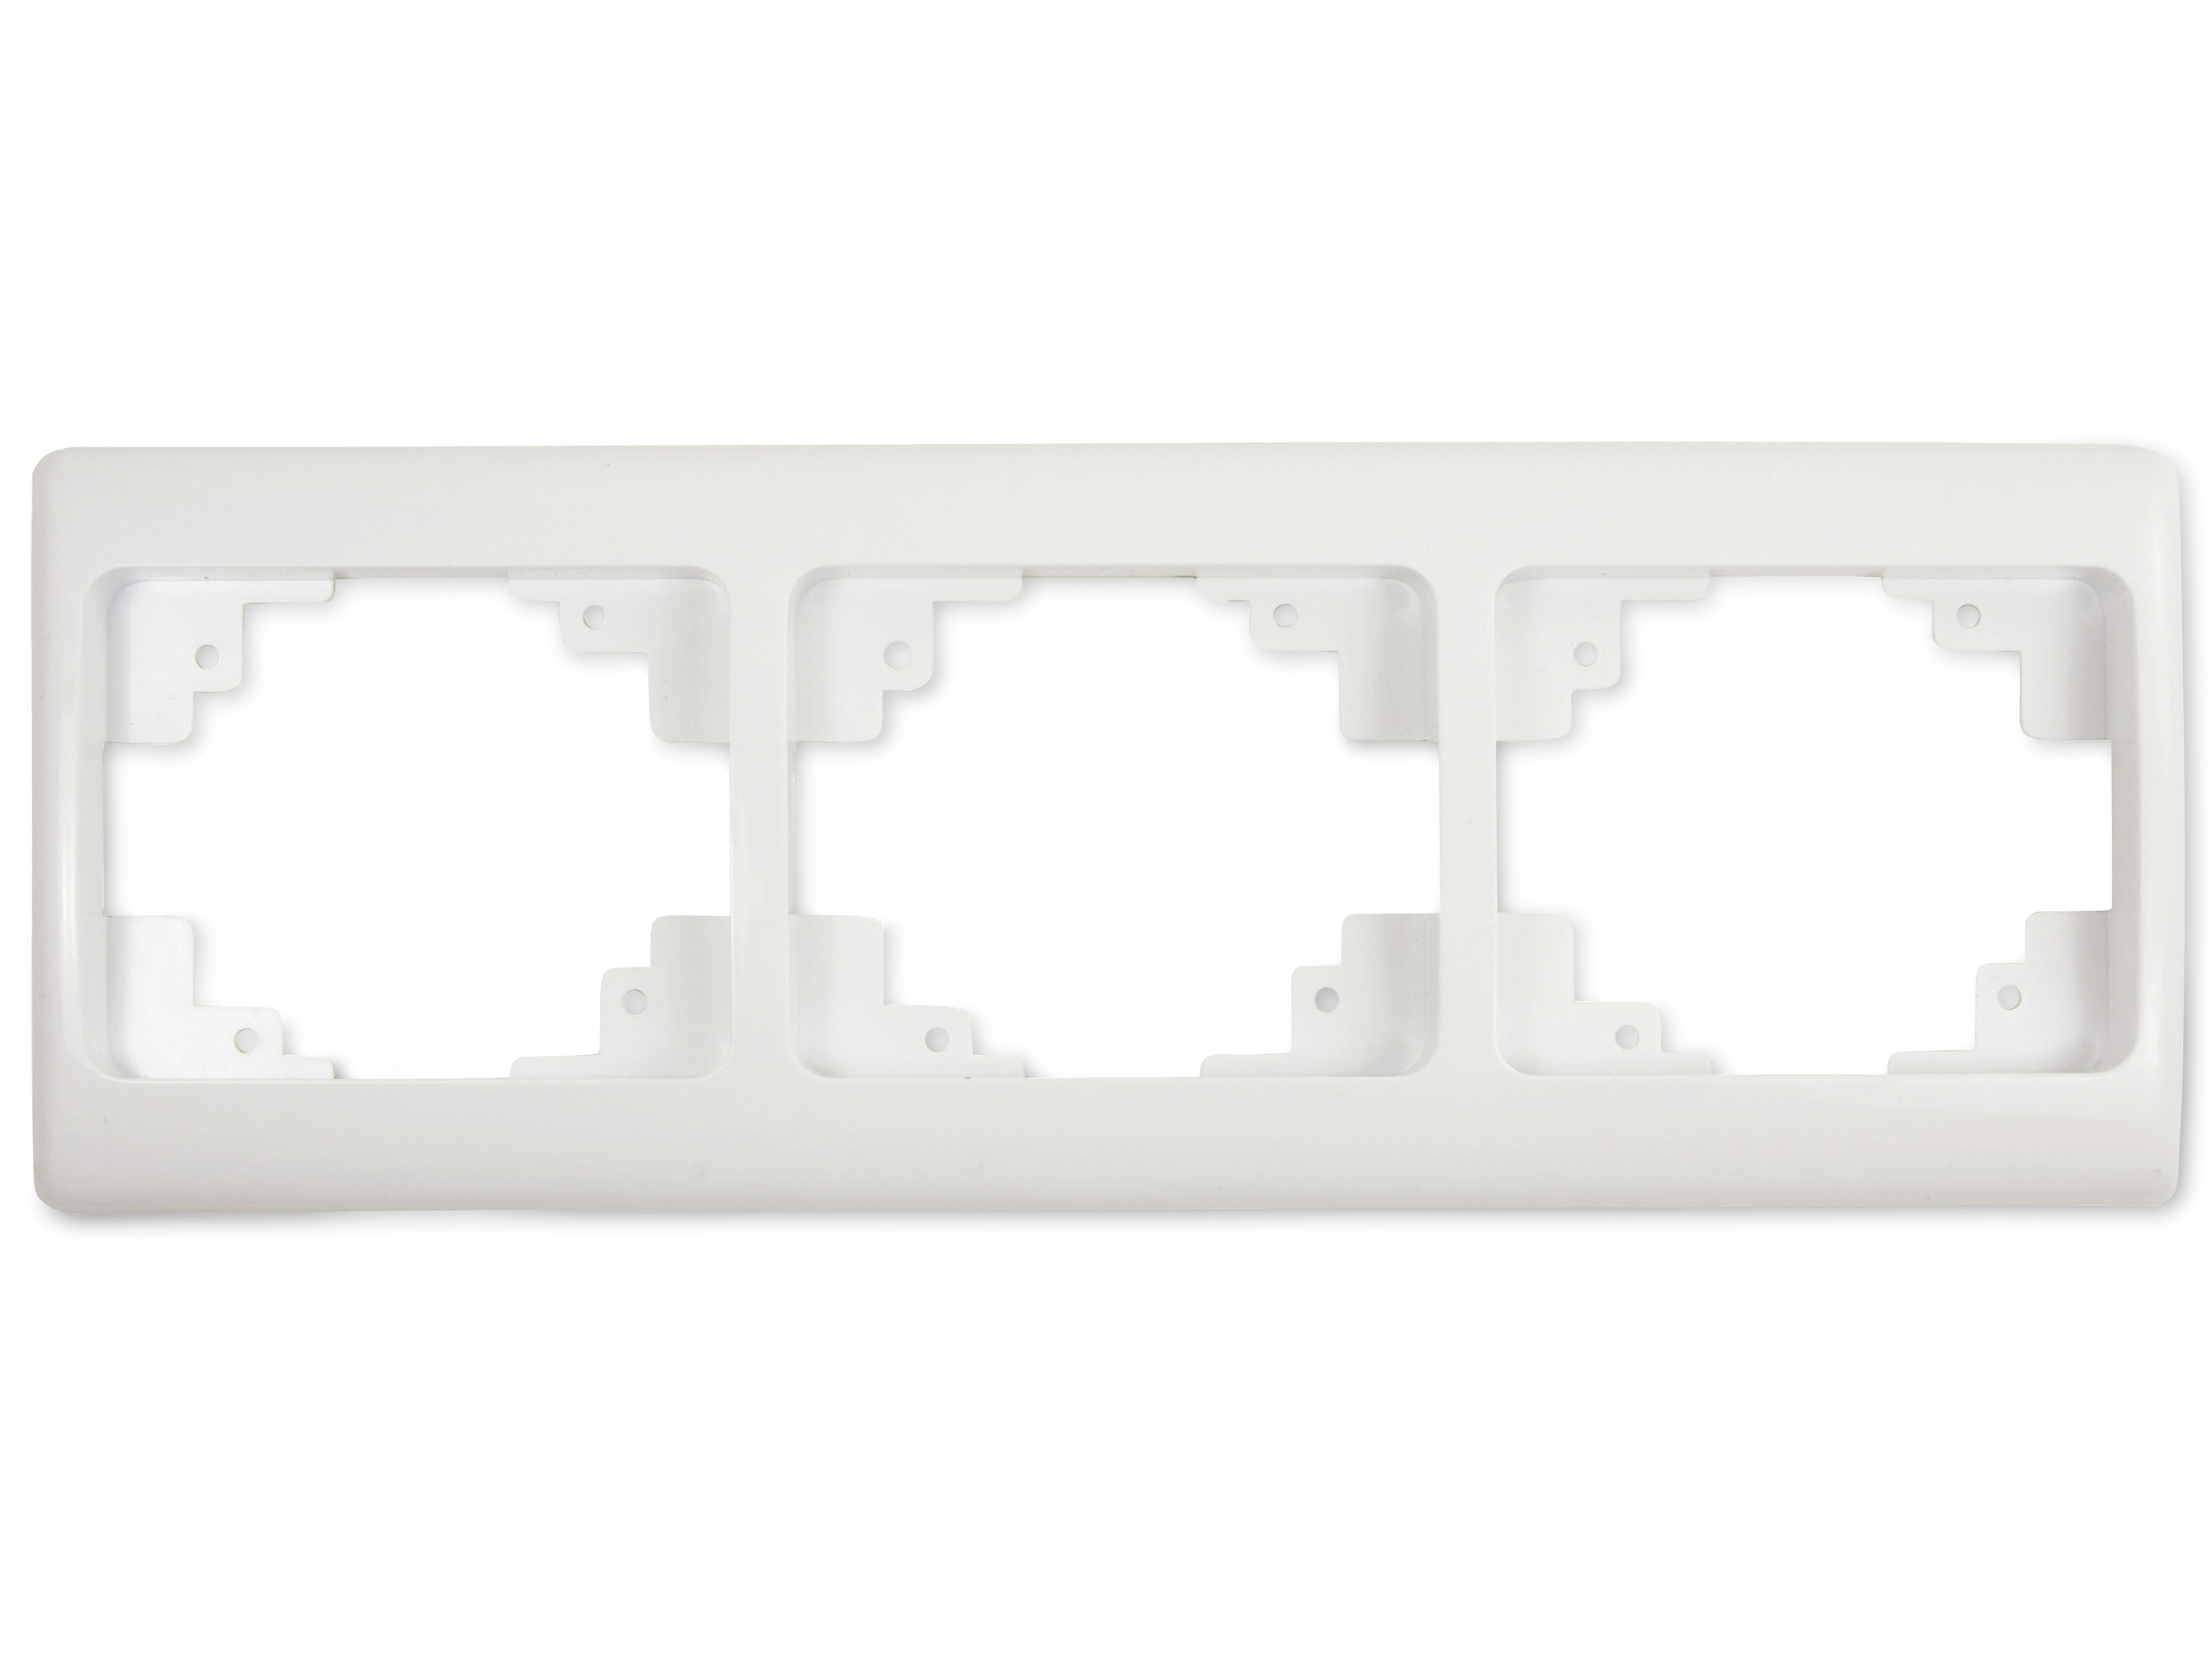 ARCAS CLASSIC Schalter/Steckdosen-Rahmen, 3-fach, W13-O003